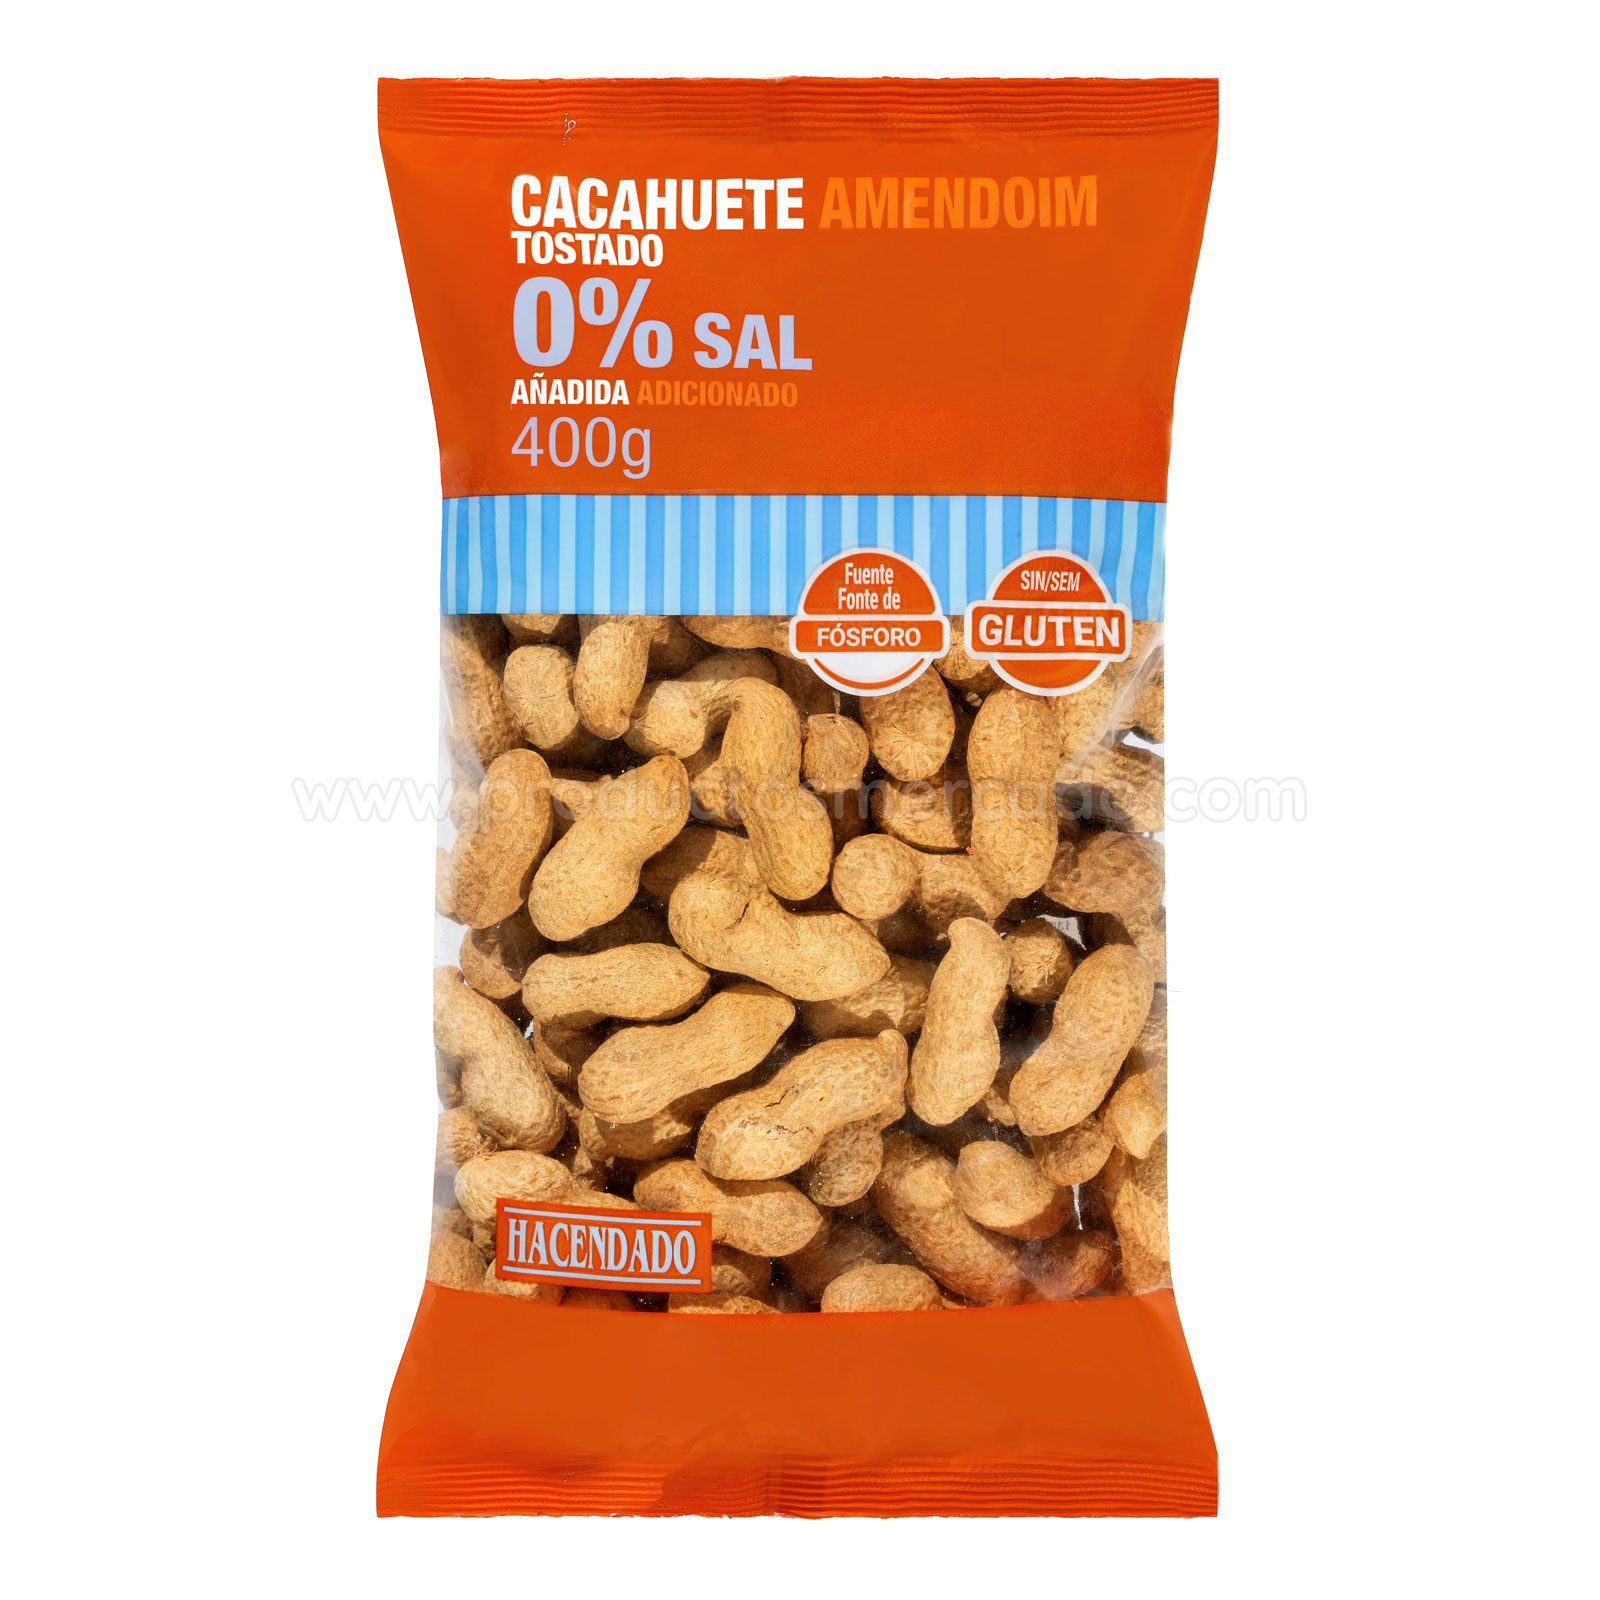 Cacahuetes tostados 0% sal añadida Hacendado